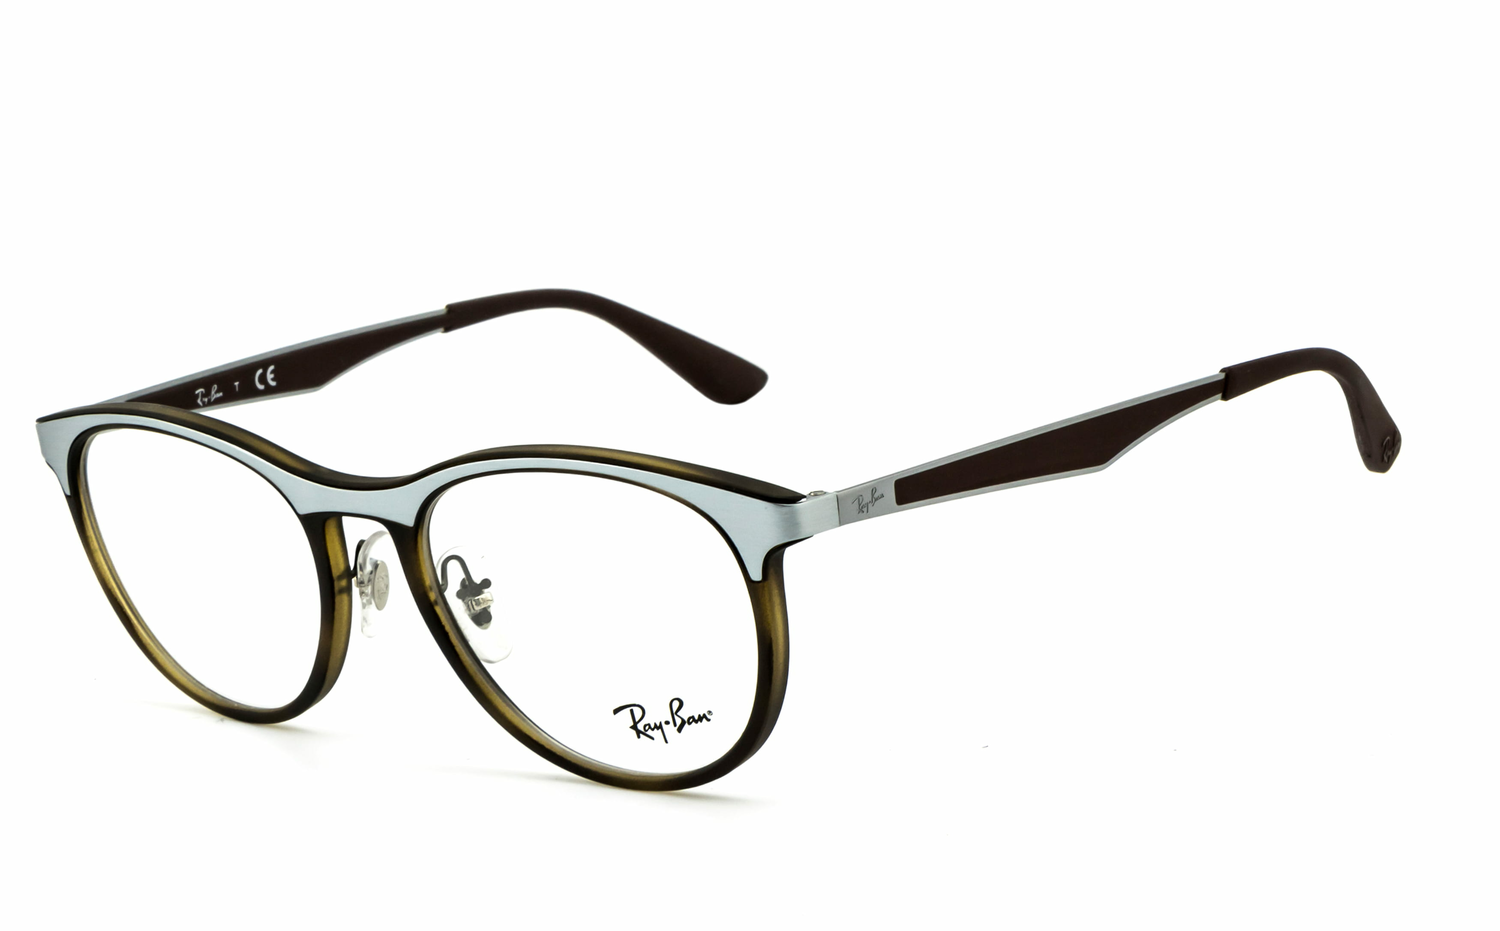 Ray-Ban | RB7116  Brille, Brillengestell, Brillenfassung, Korrekturbrille, Korrekturfassung